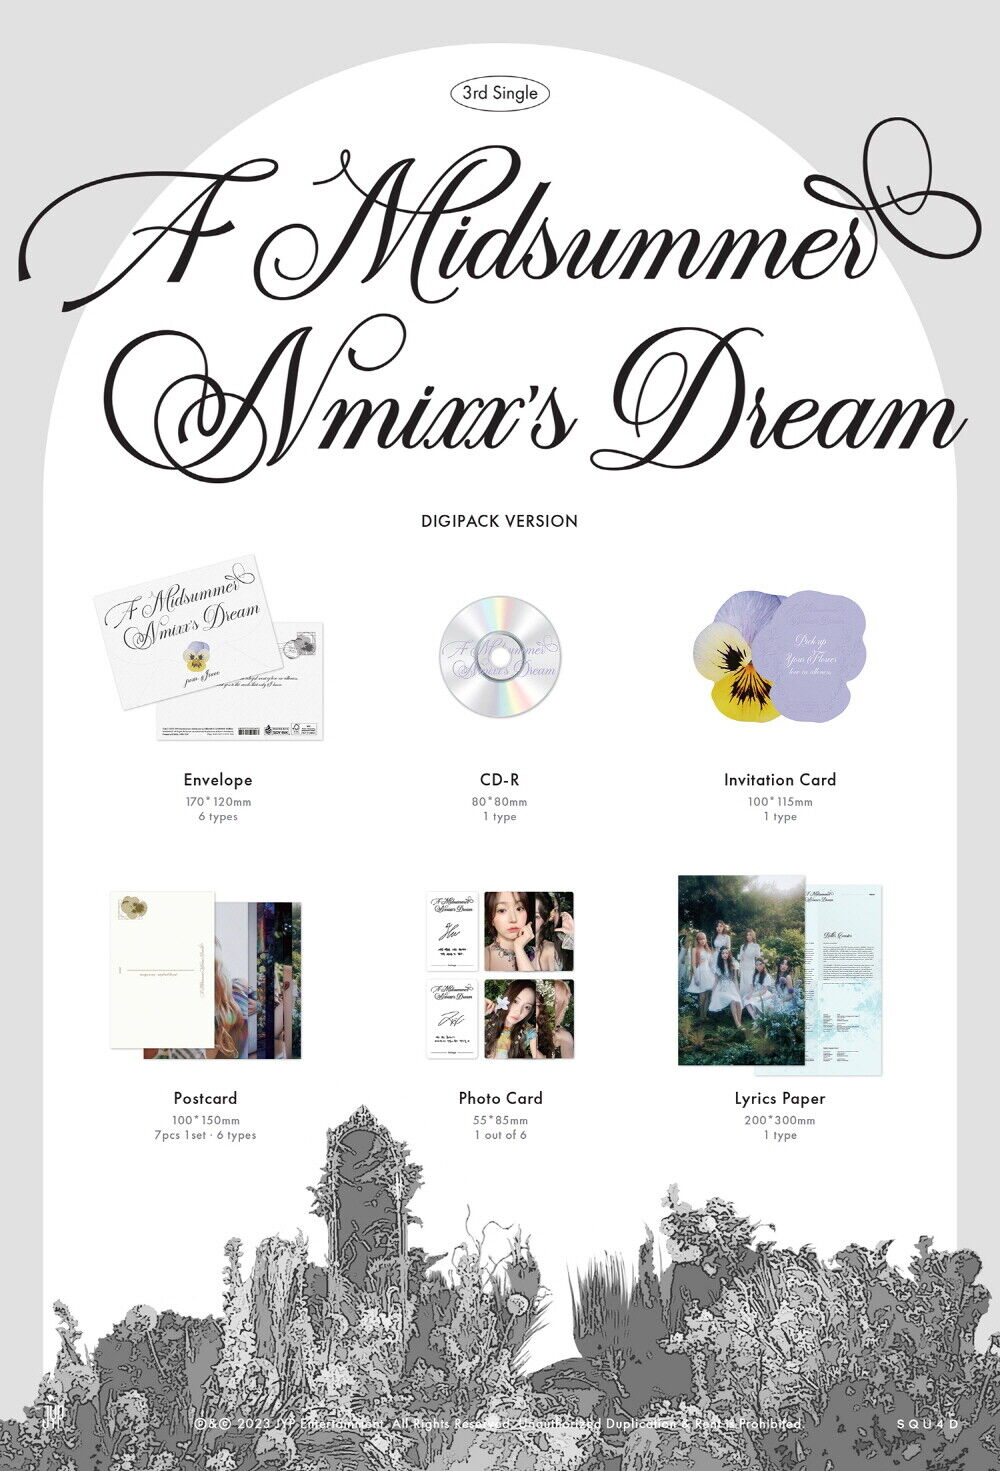 NMIXX 3RD SINGLE ALBUM 'A MIDSUMMER NMIXX'S DREAM' (DIGIPACK) DETAIL